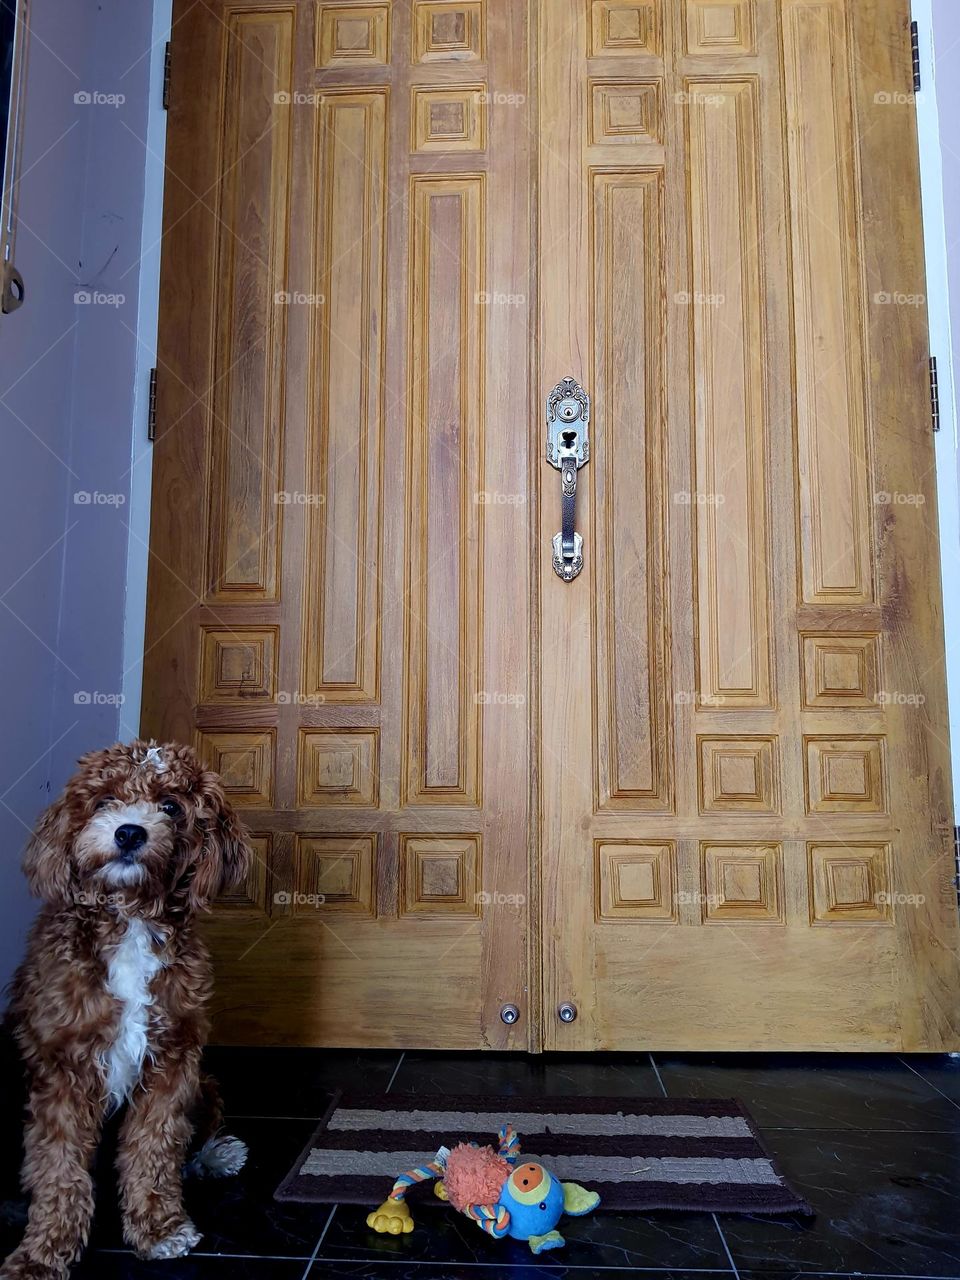 Doggie gaurds the door